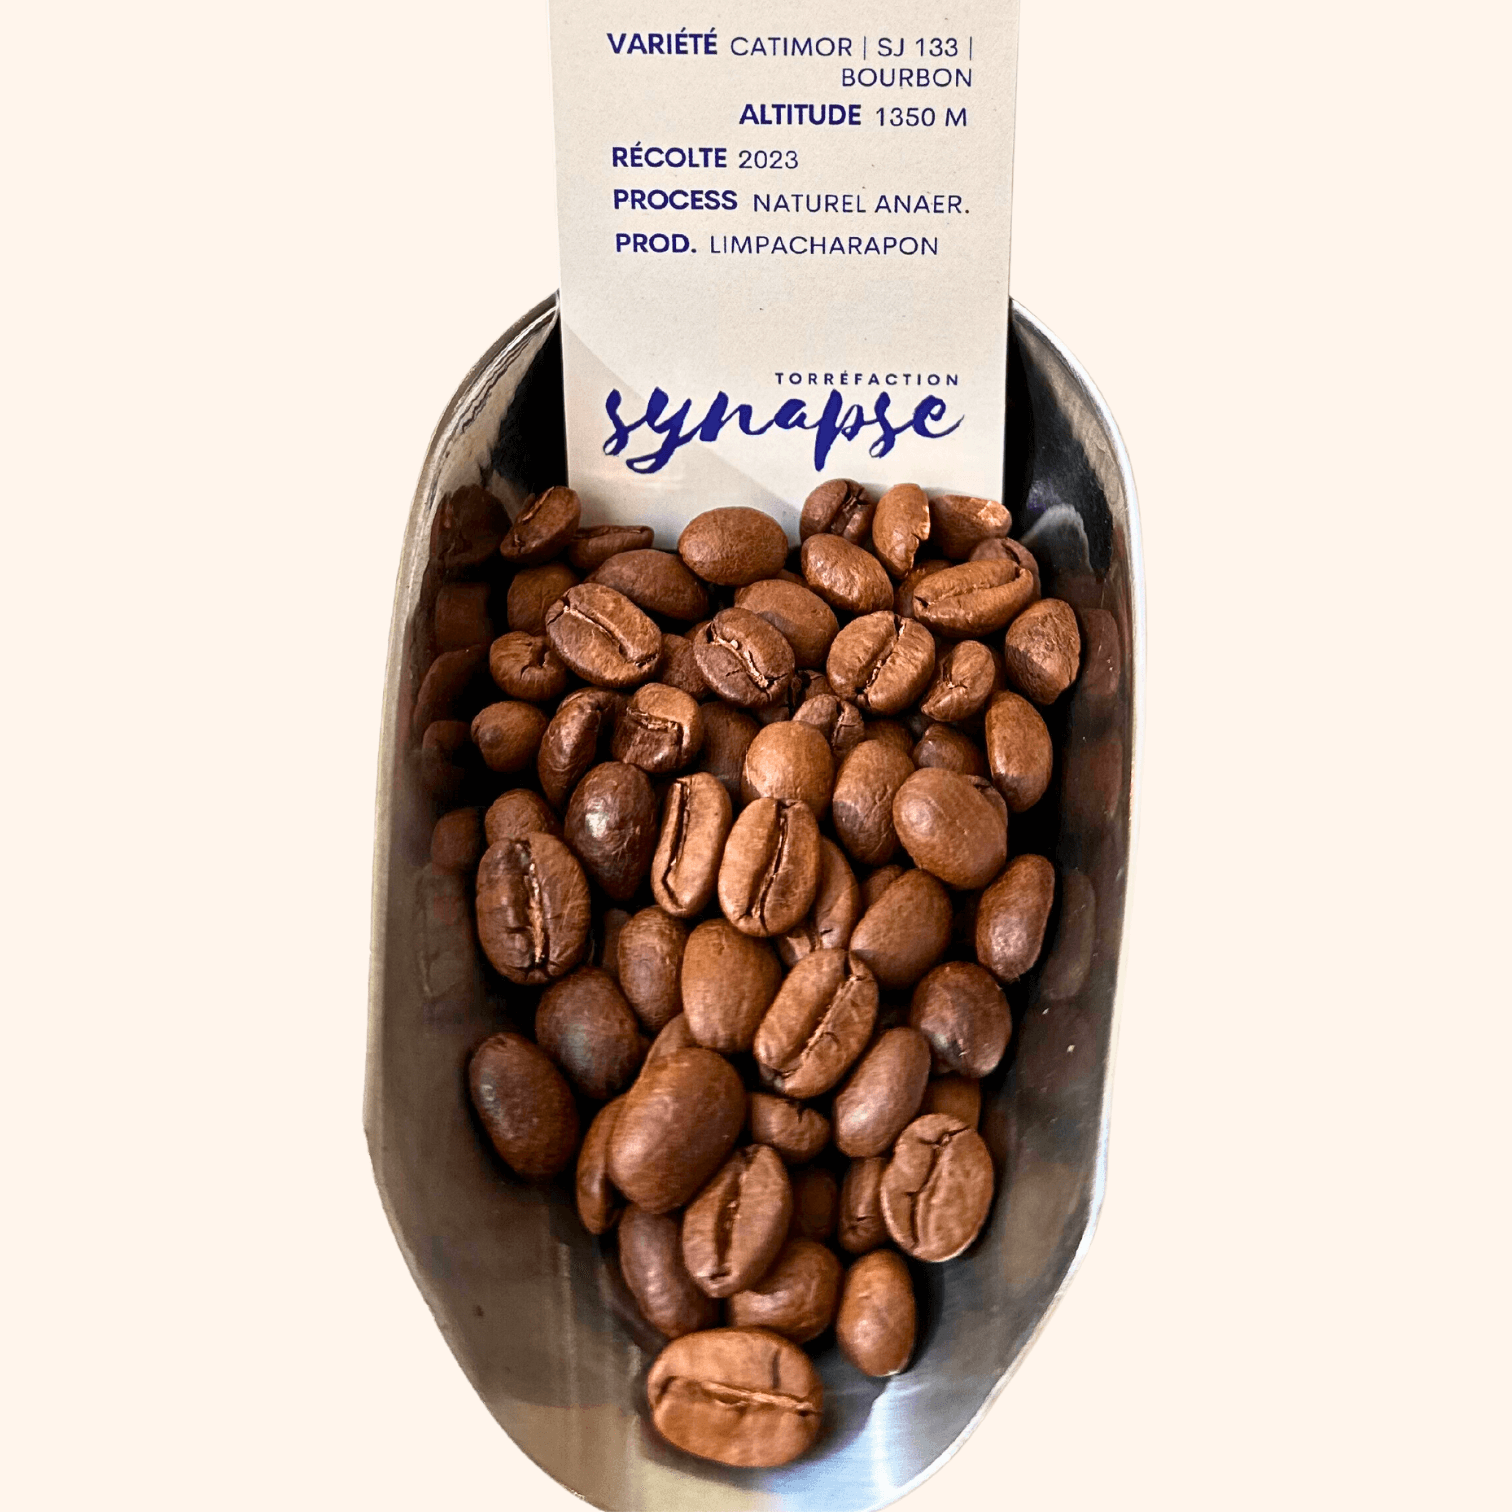 Grains du café de thaïlande torréfié et son étiquette informative